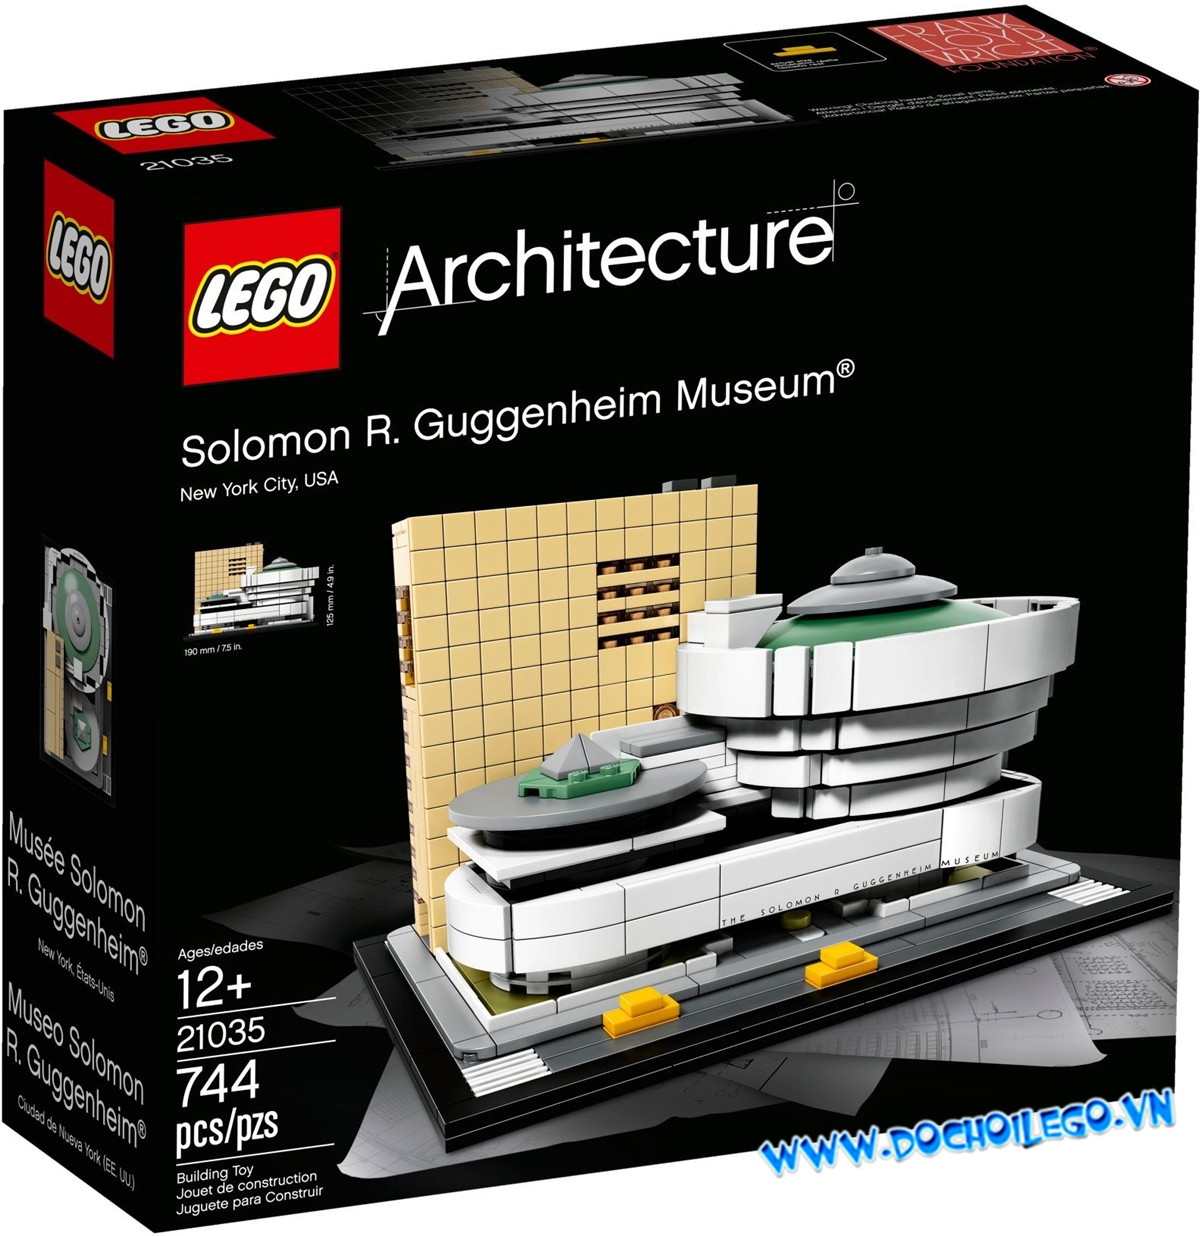 21035 LEGO Architecture Solomon R. Guggenheim Museum - Viện Bảo Tàng Solomon R. Guggenheim